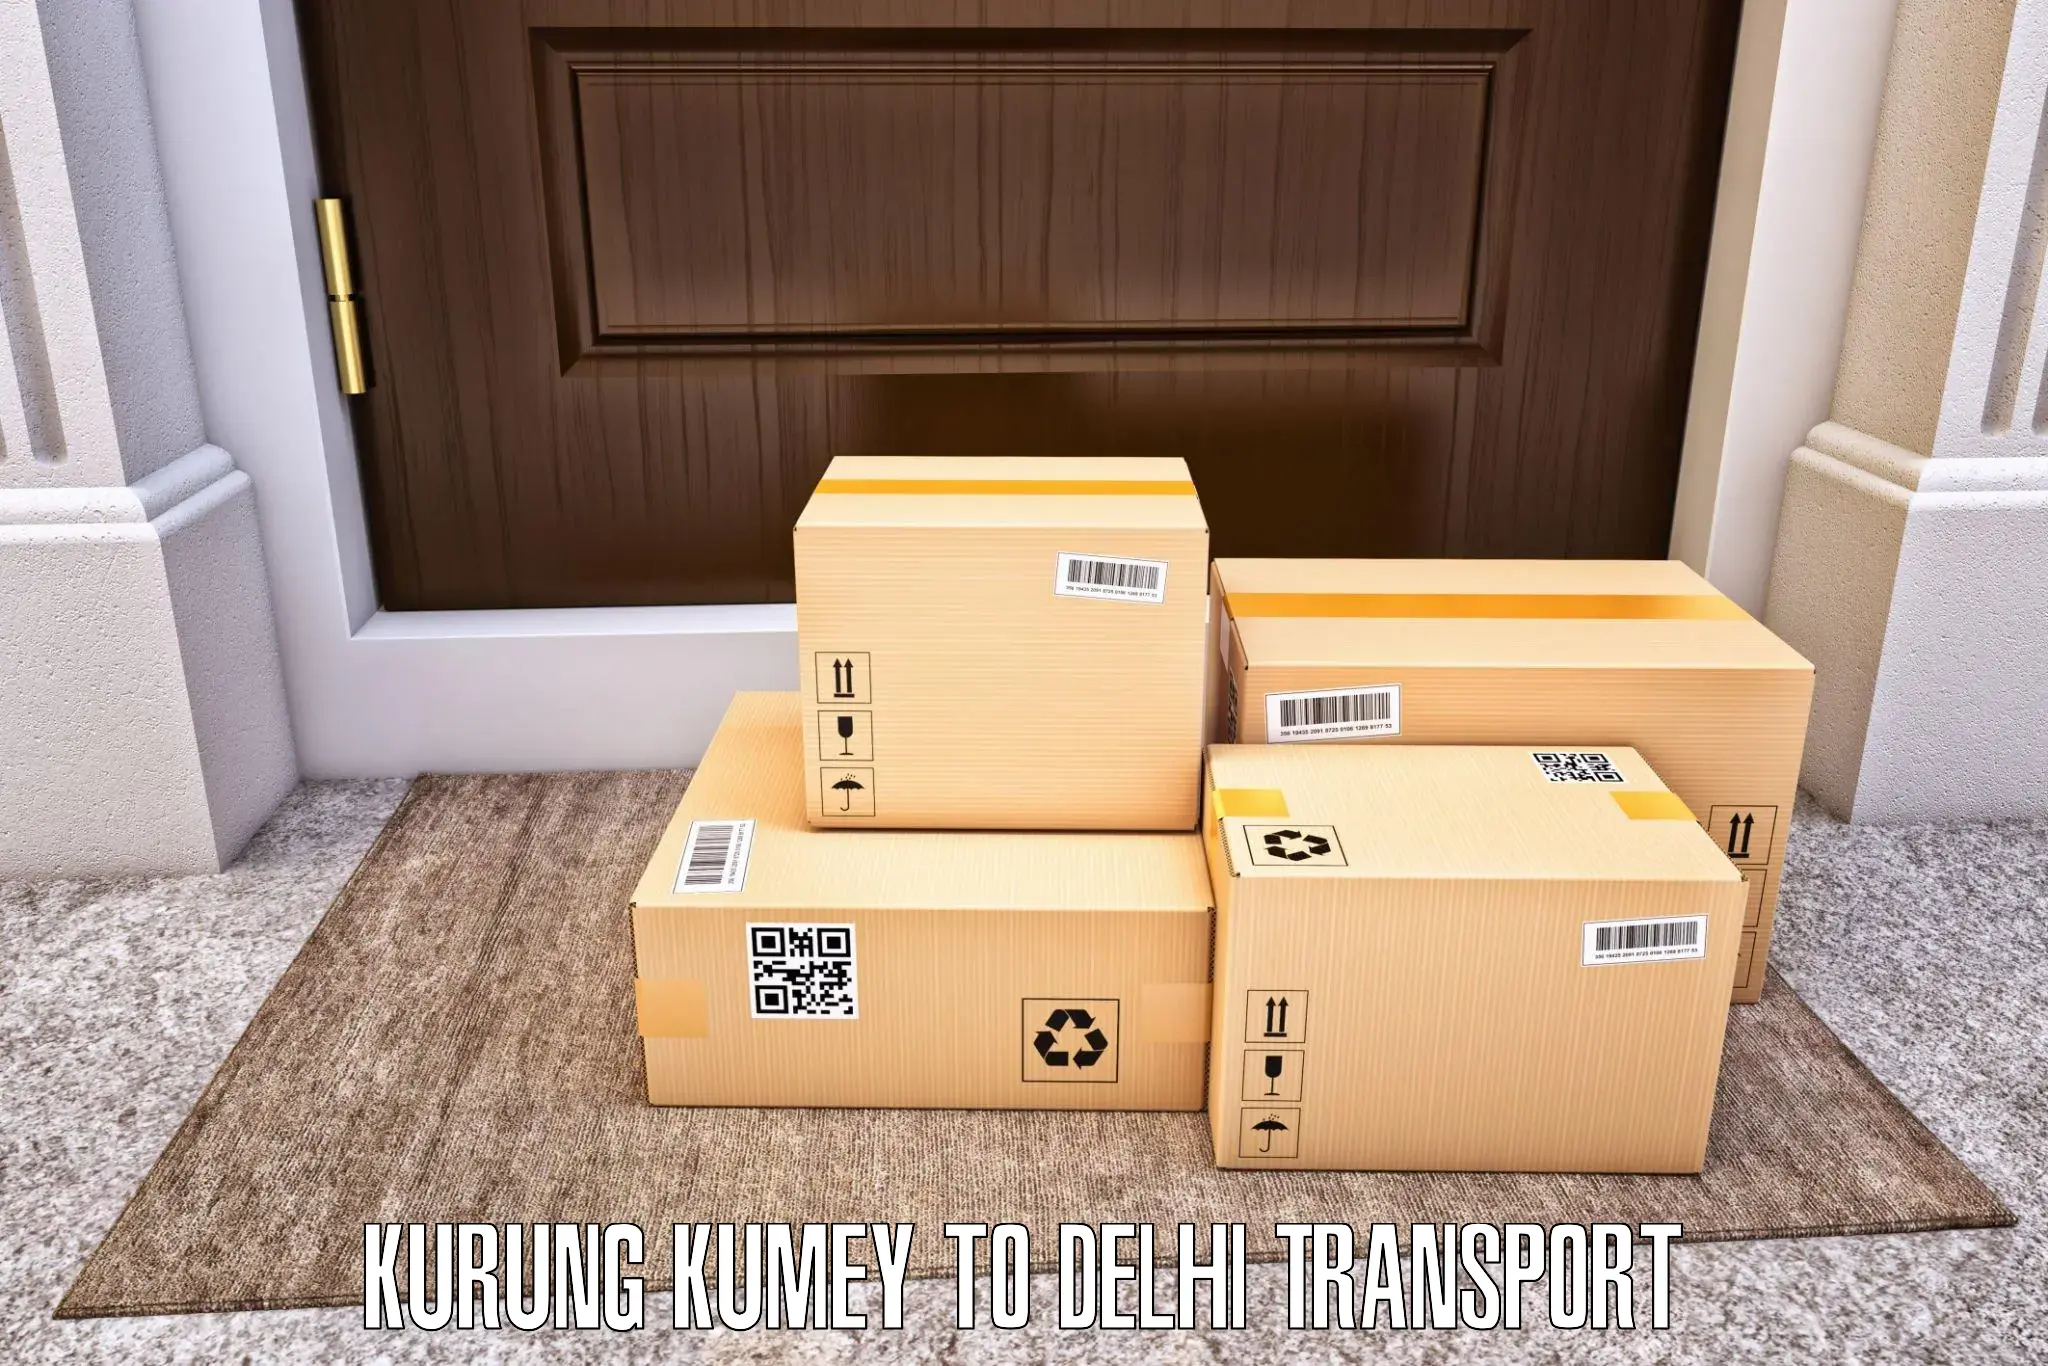 Intercity transport in Kurung Kumey to NCR